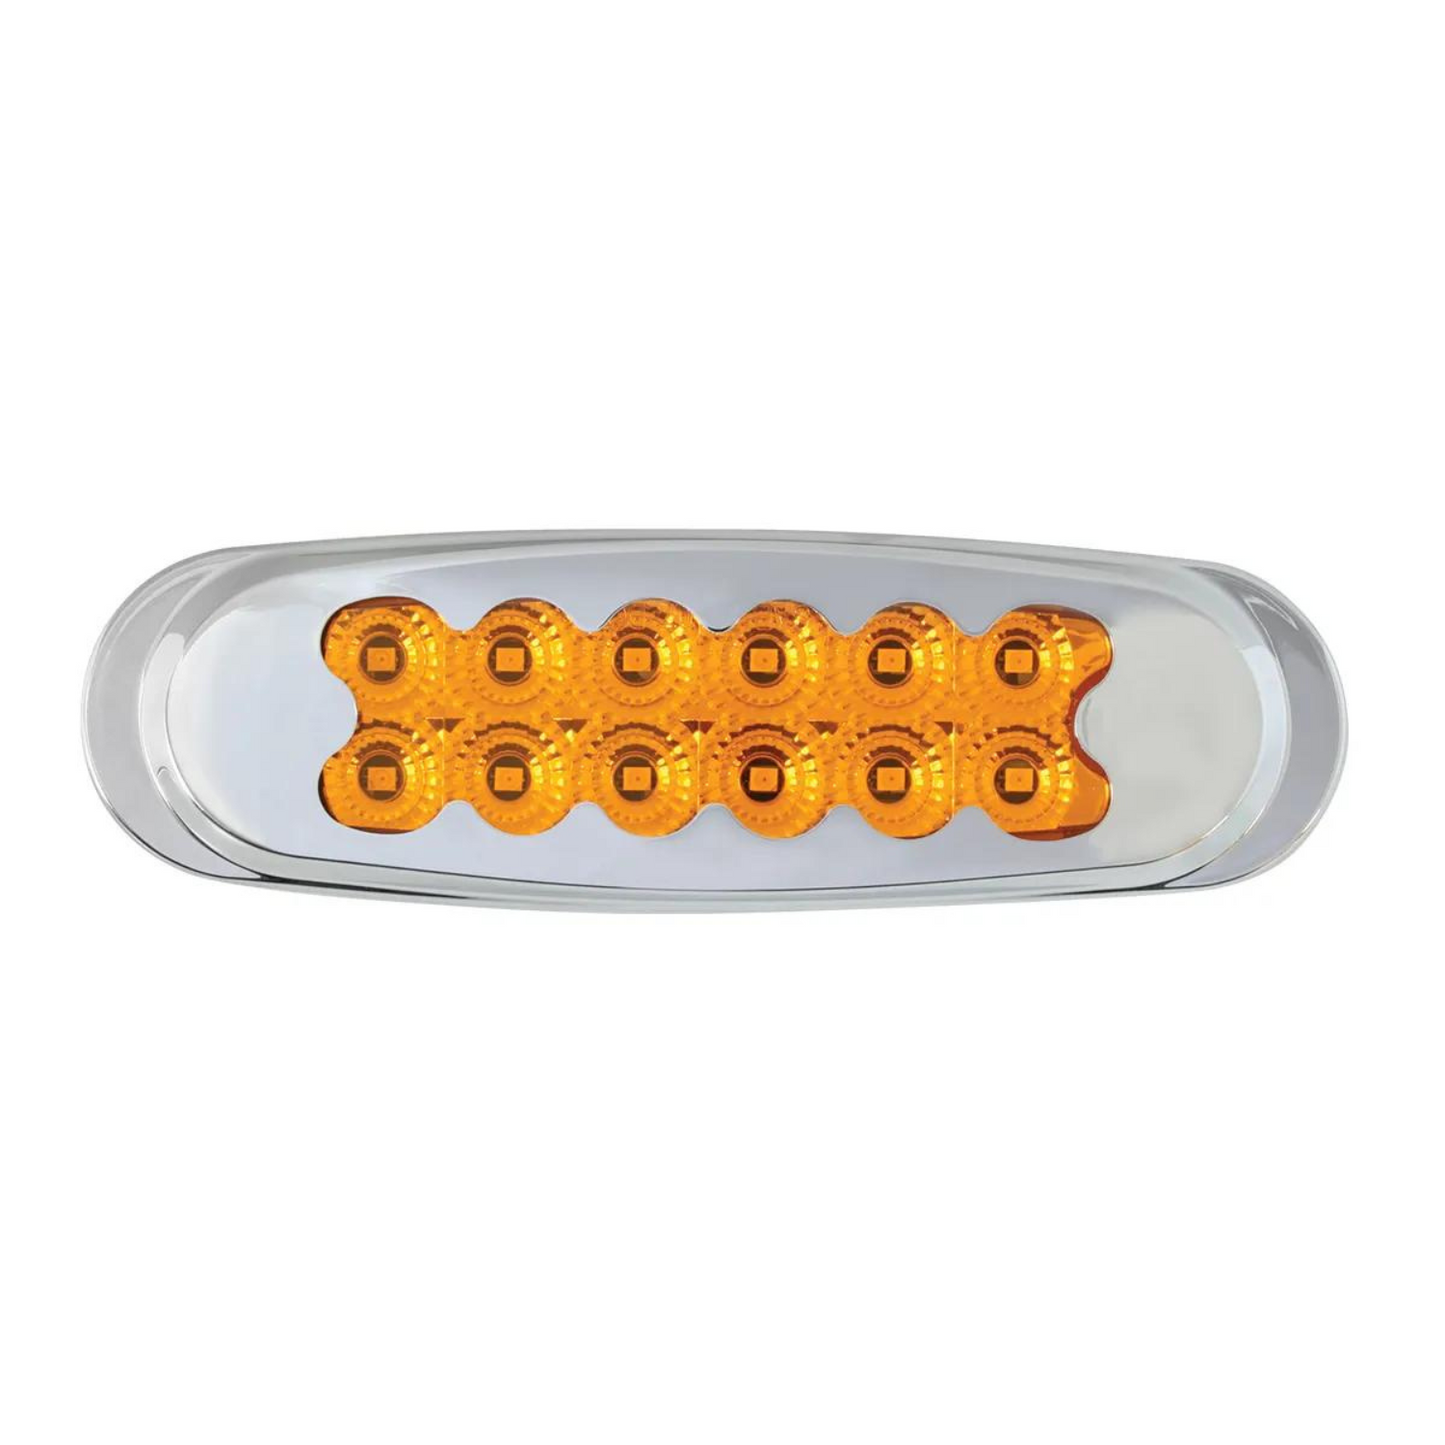 Spyder 12 LED Light with Chrome Plastic Bezel in Amber